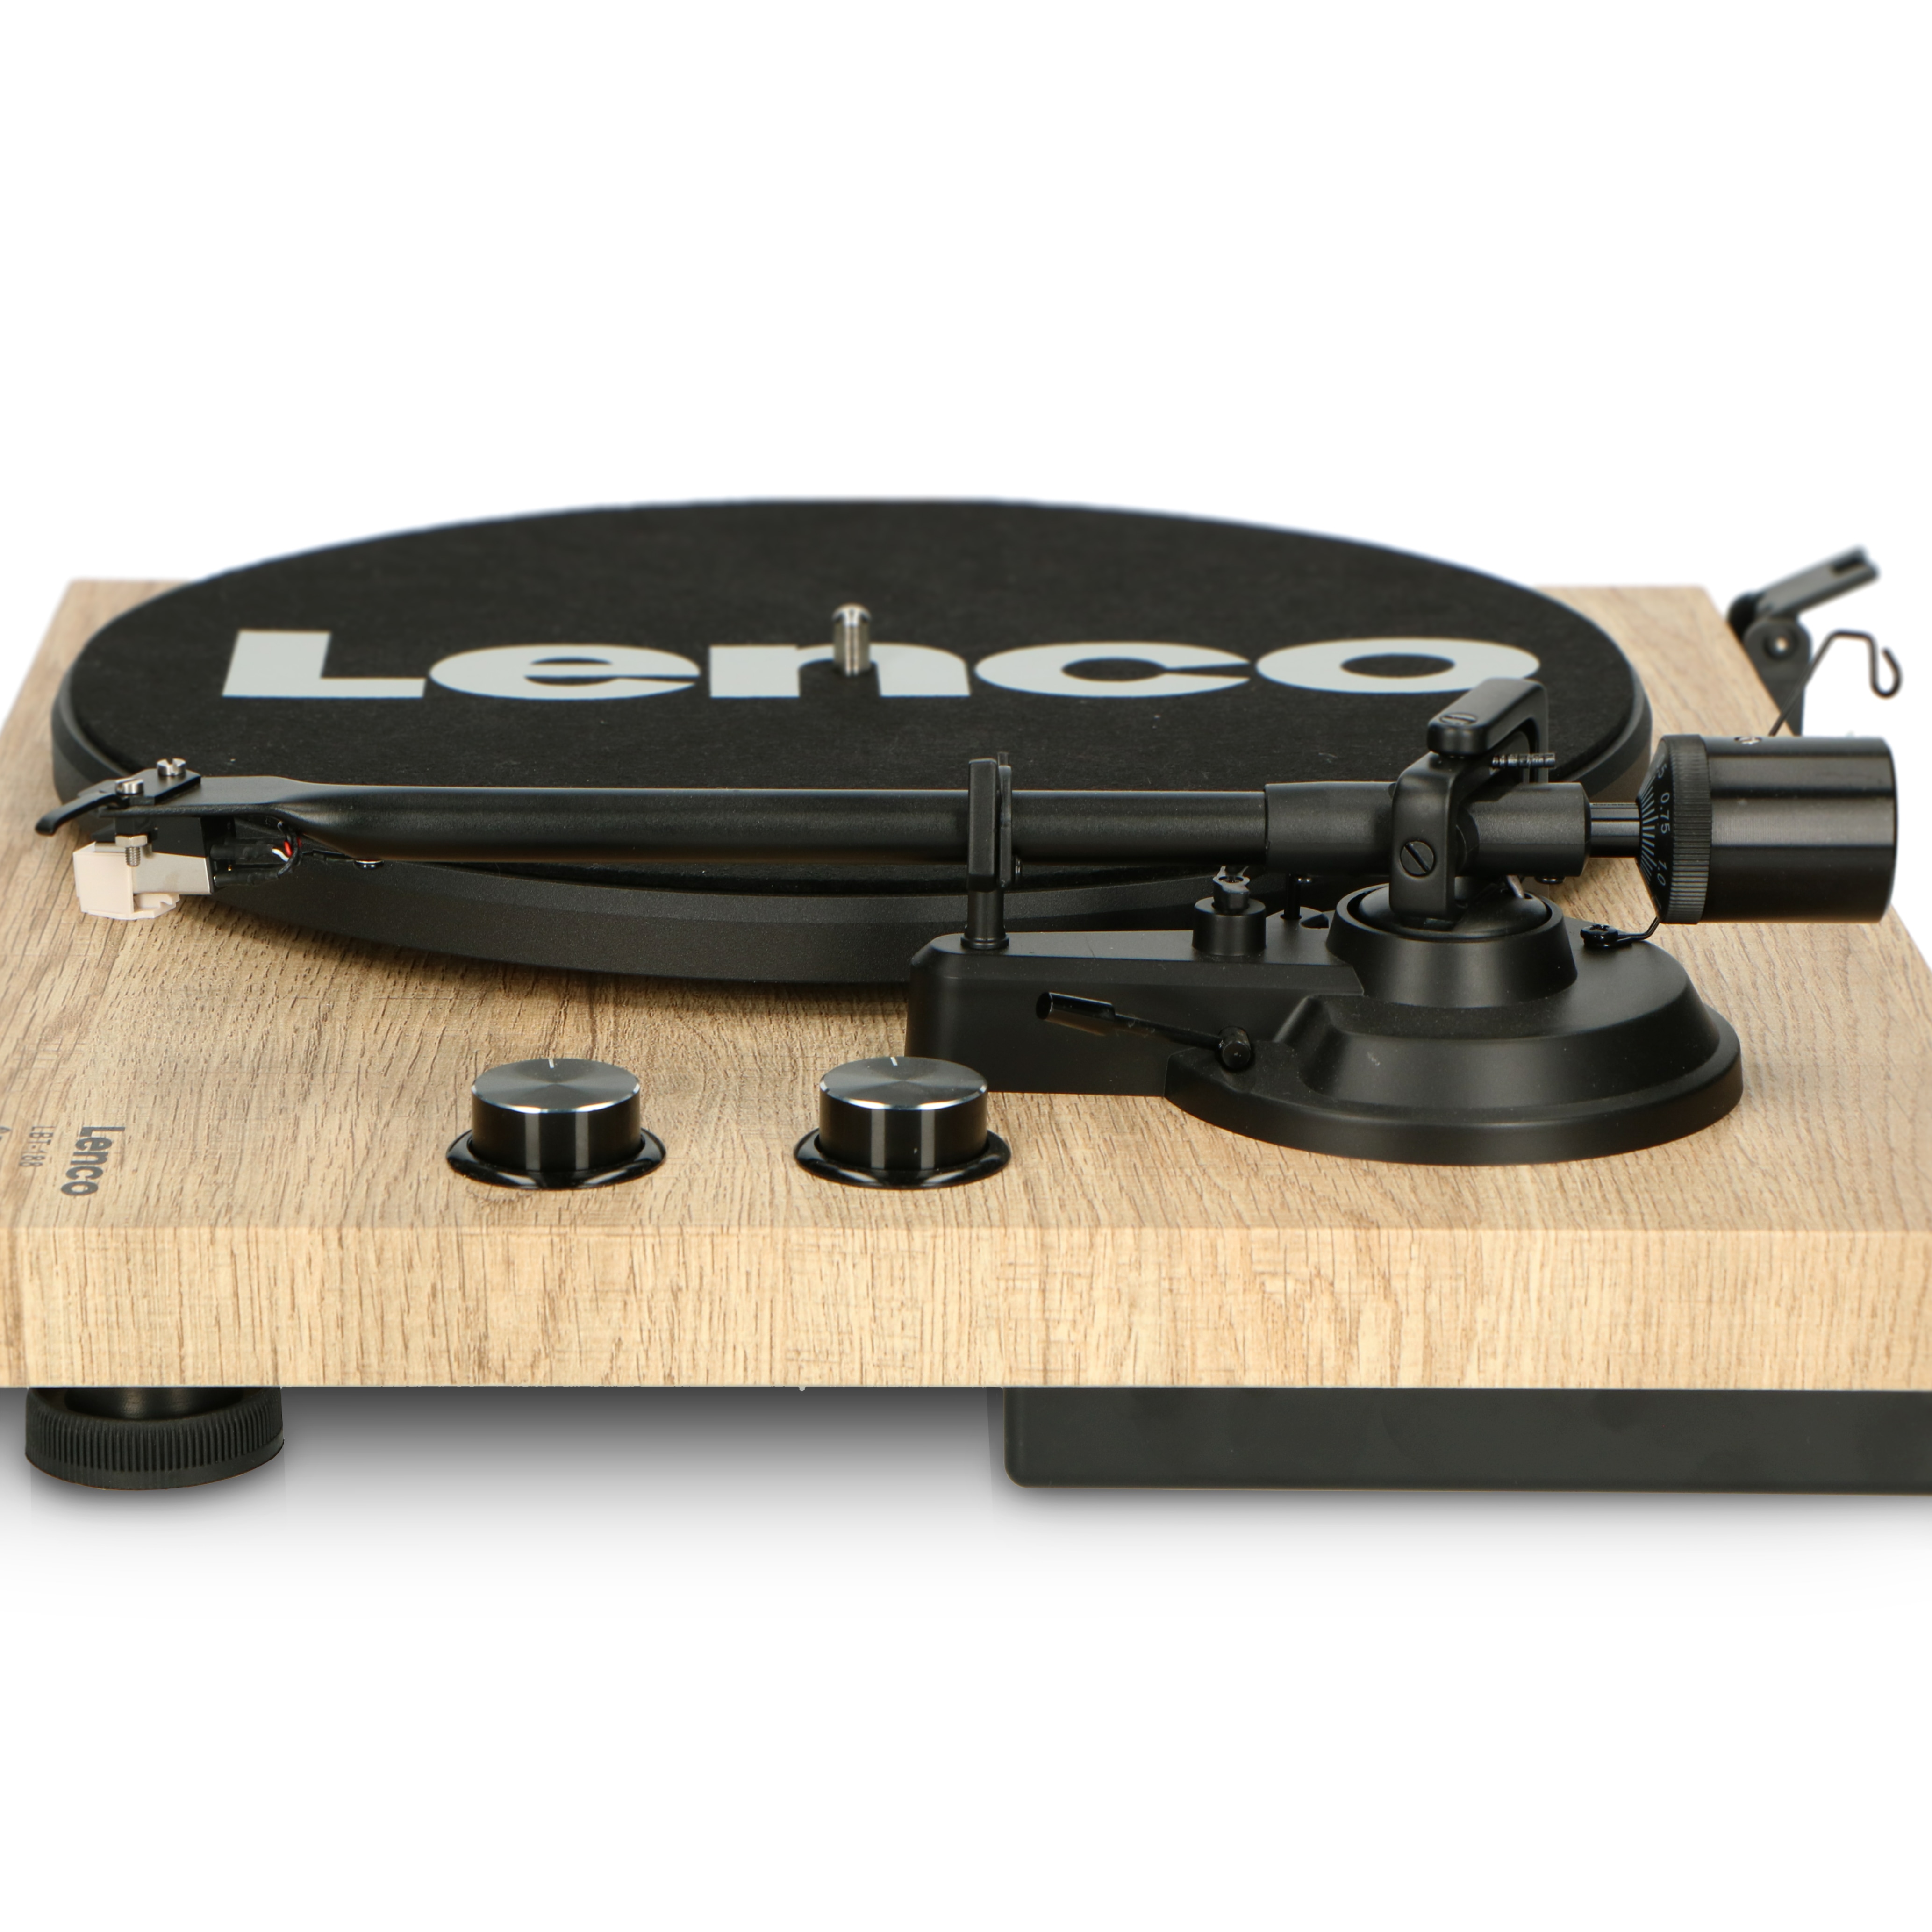 Lenco LBT-188PI - Plattenspieler mit Riemenantrieb und Bluetooth -  Anti-Skating - Holz online kaufen bei Netto